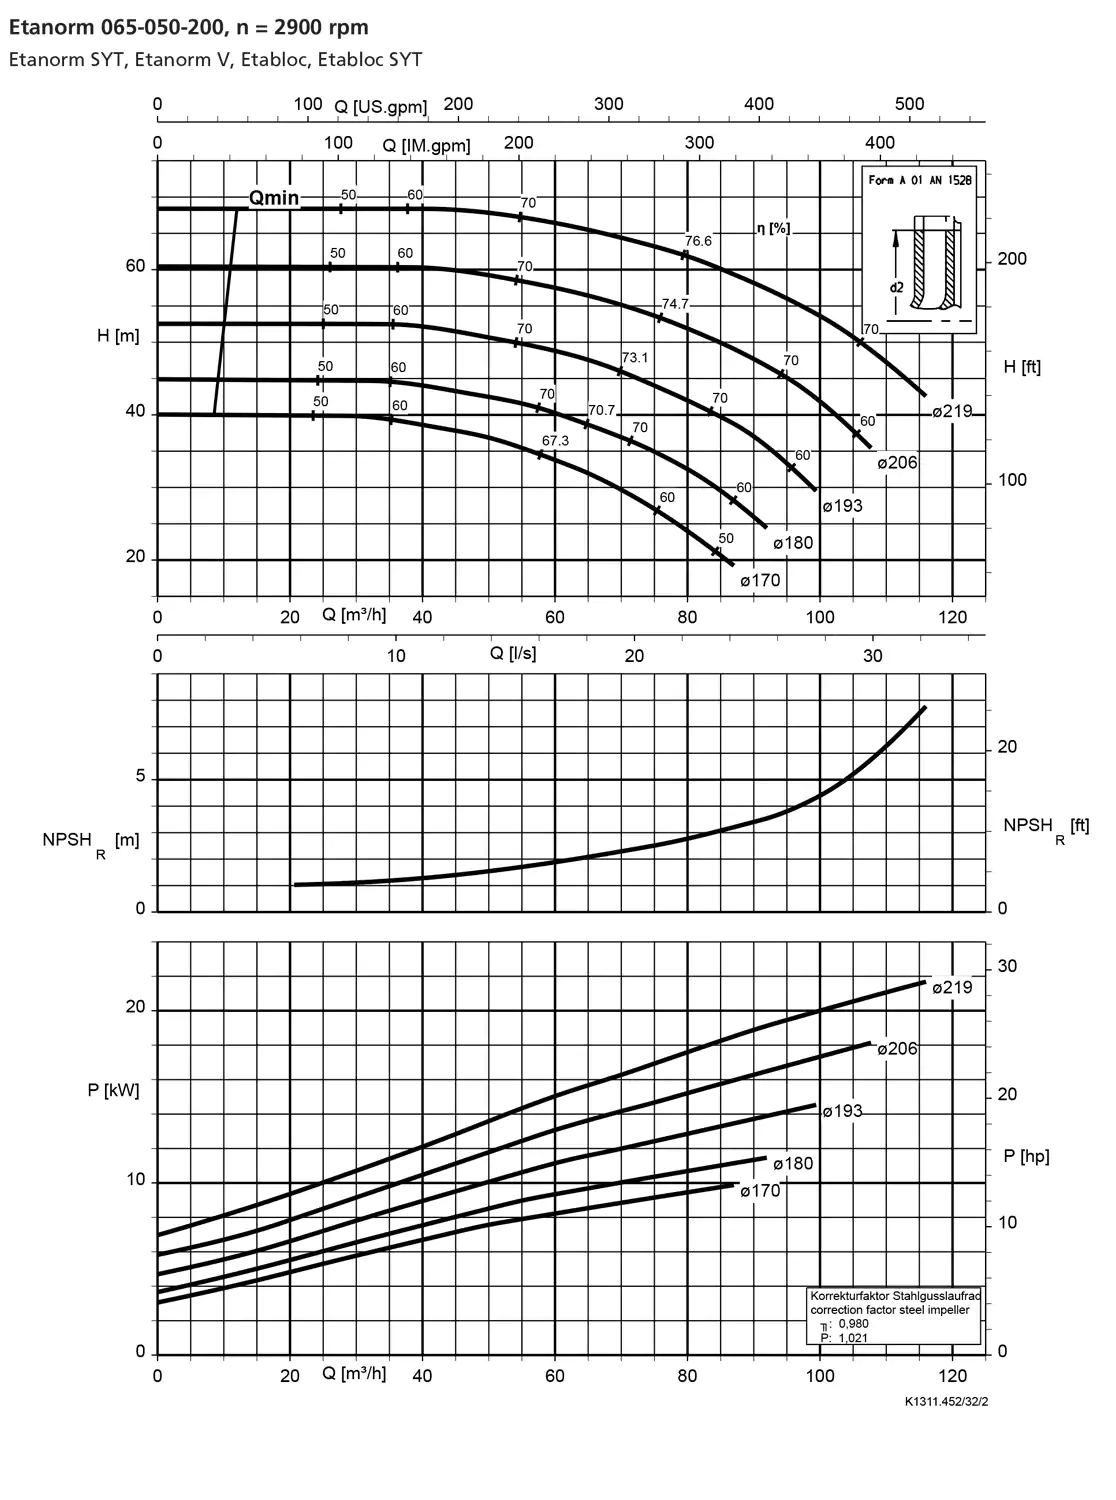 نمودار-کارکرد-پمپ-etanorm-syt-65-050-200-2900